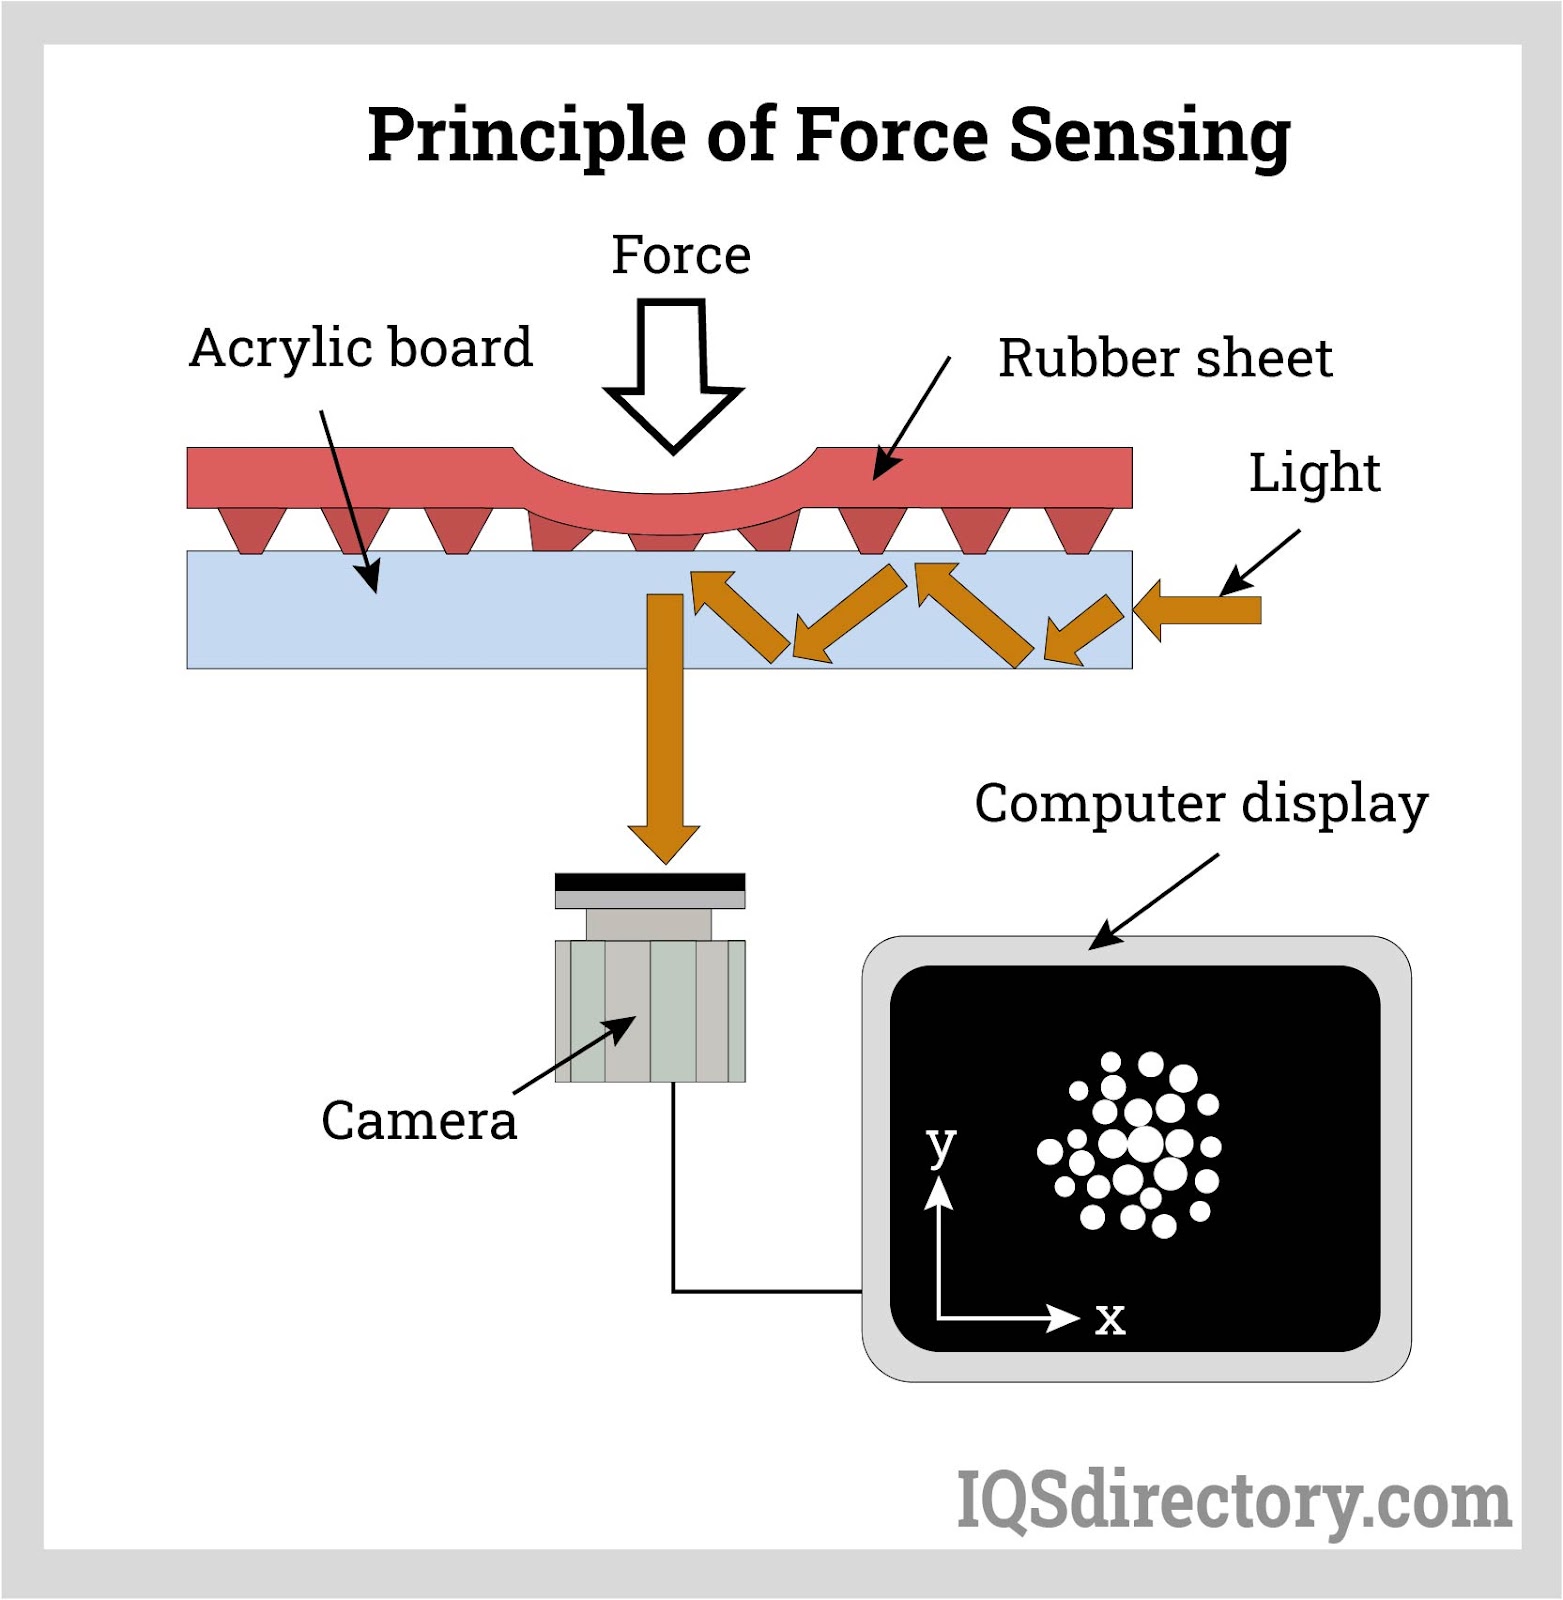 Principle of Force Sensing